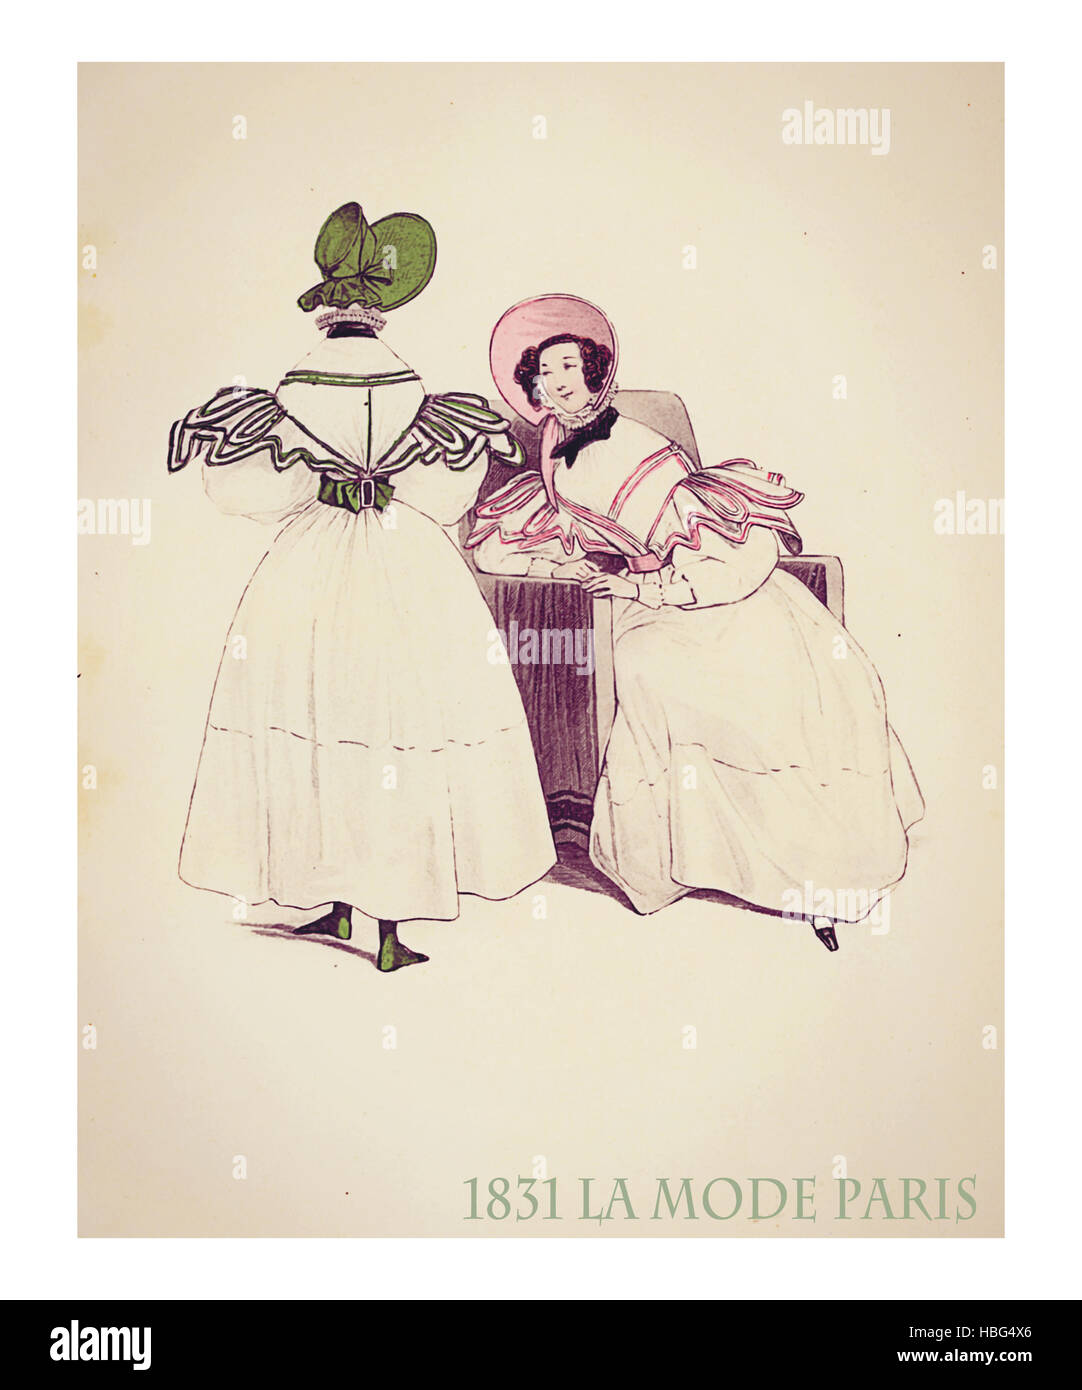 1831, le magazine français de la mode La Mode présente deux femmes discutant vinaigrette tranquillement le même modèle avec des couleurs et décorations hat Banque D'Images